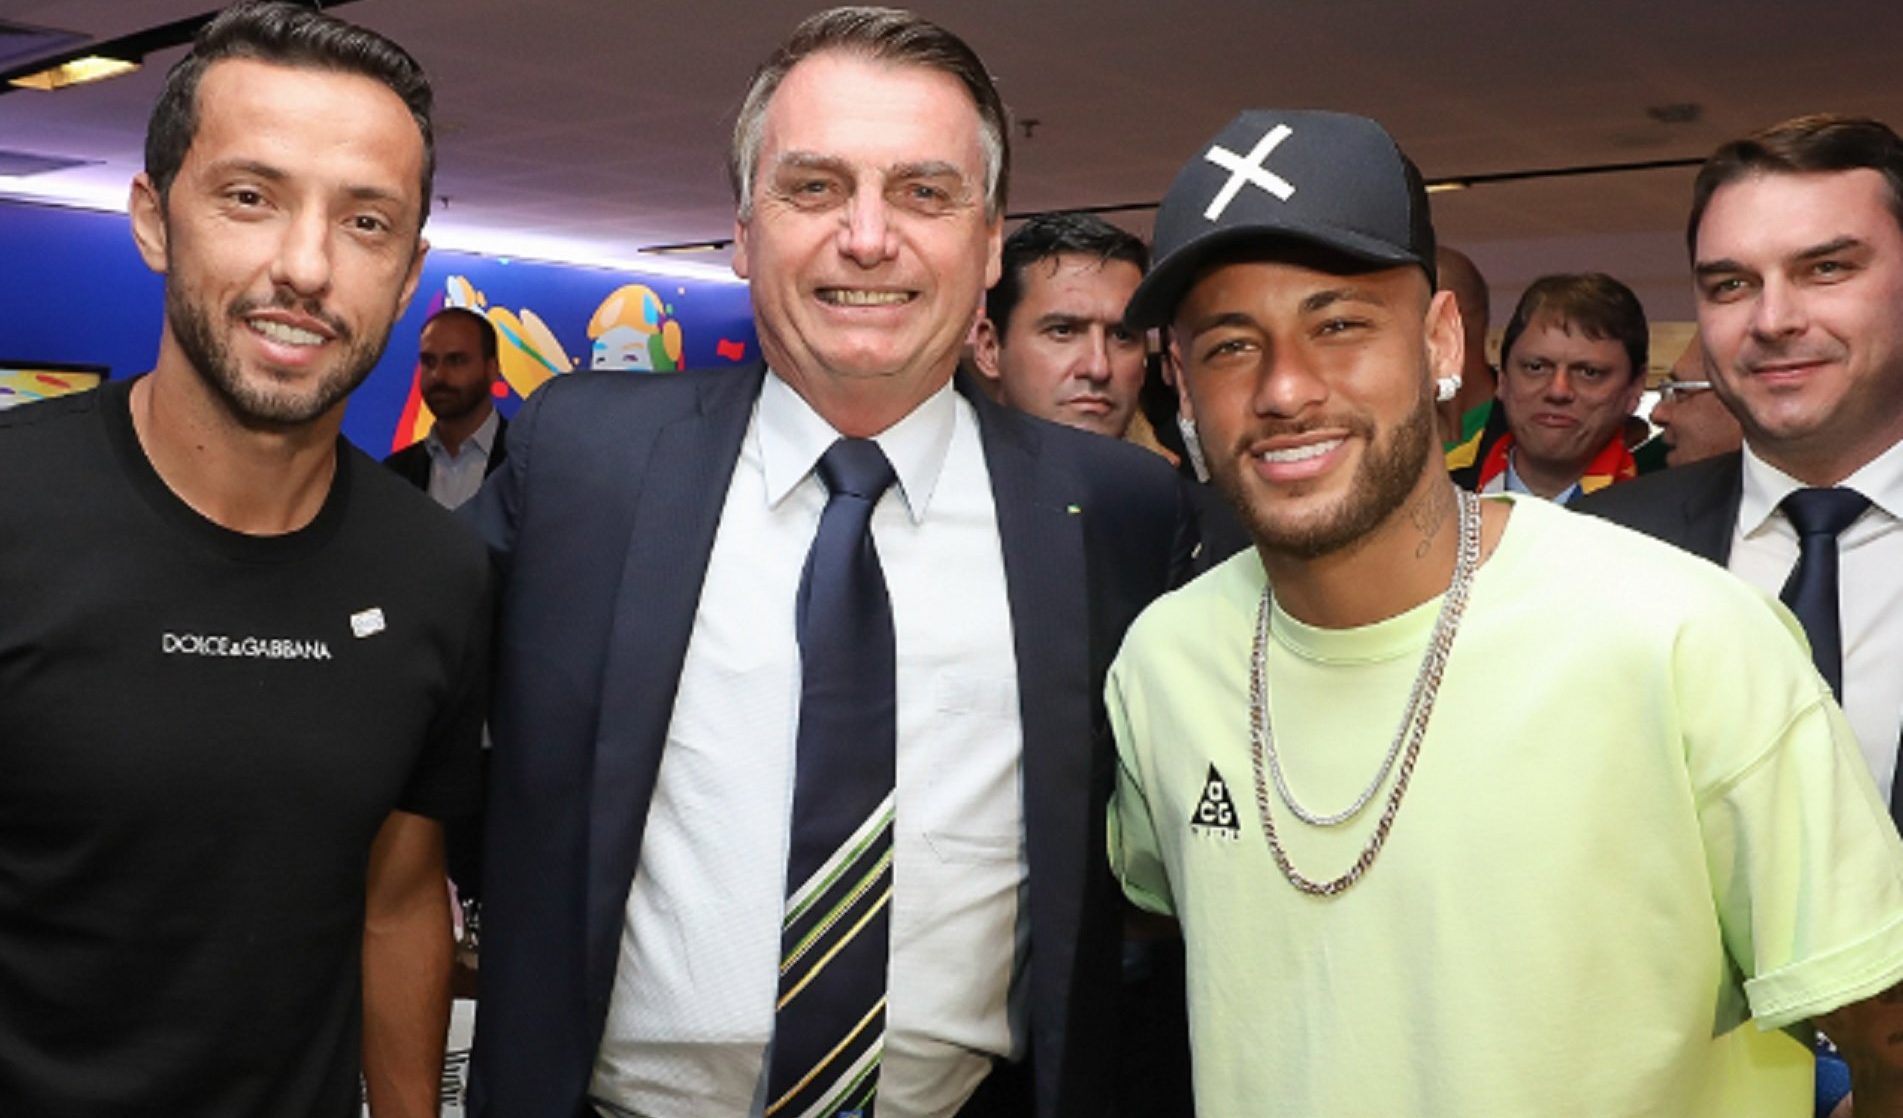 Neymar appoggia Bolsonaro: "Abbiamo gli stessi valori". Infatti è un evasore fiscale seriale